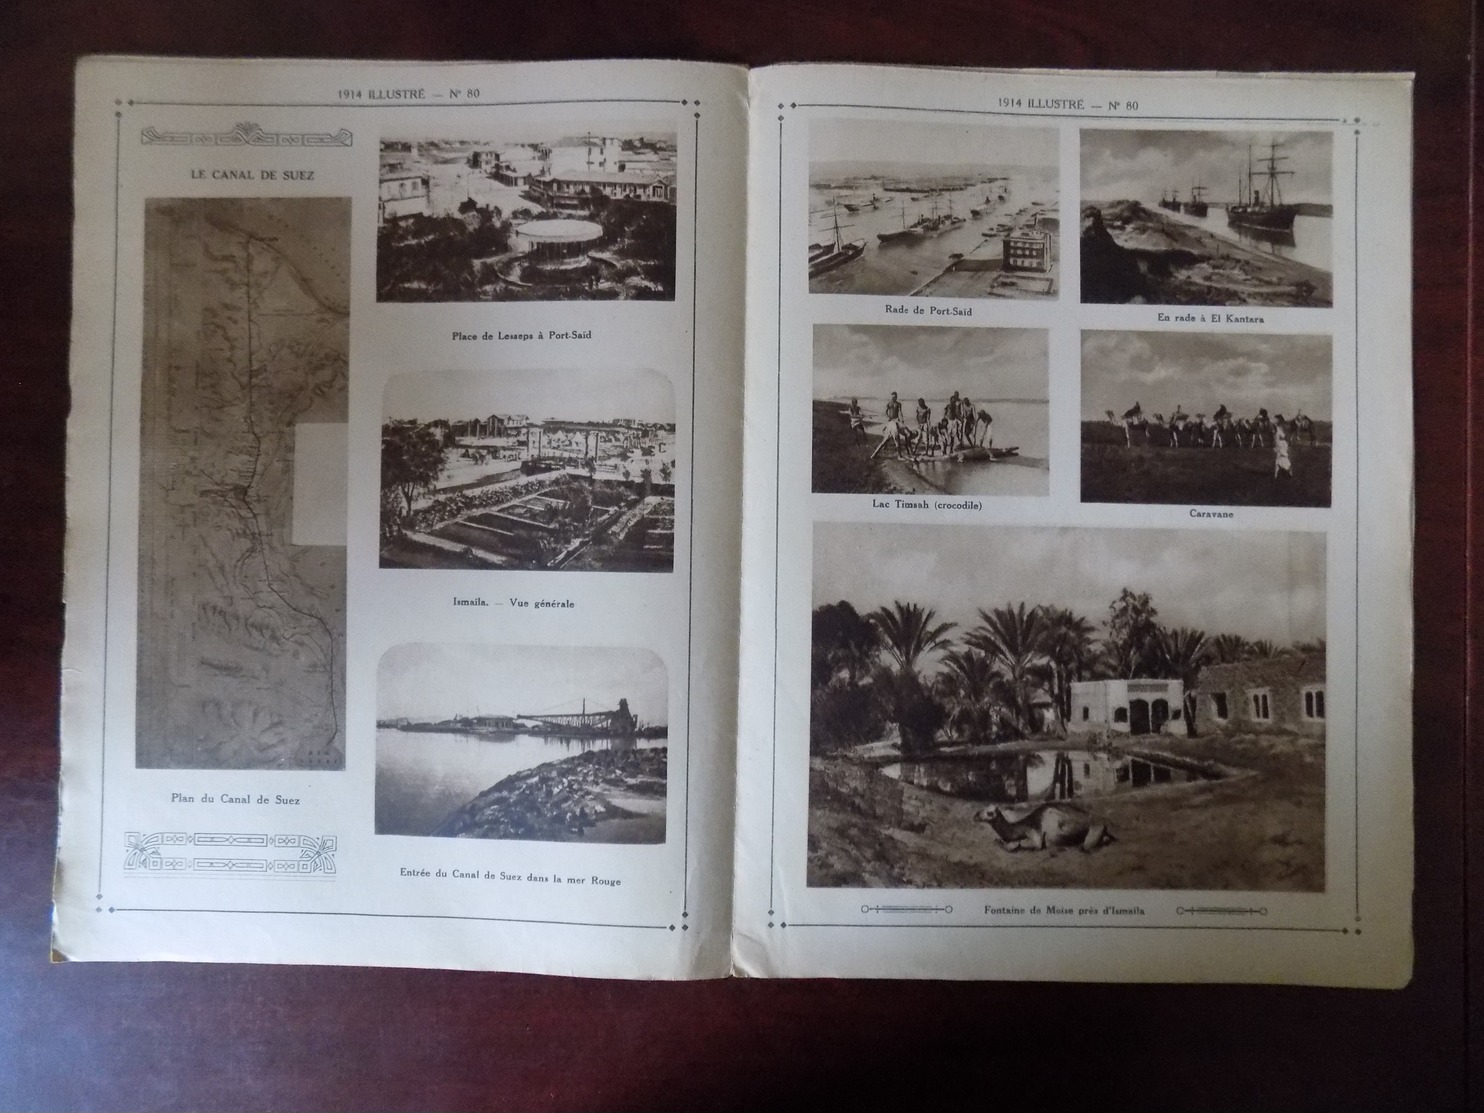 1914 Illustré N° 80 Dunkerque - Canal De Suez - Ismaila - Chine - Bruxelles " Oeuvre De L'épluchure Pommes De Terre " - Guerre 1914-18